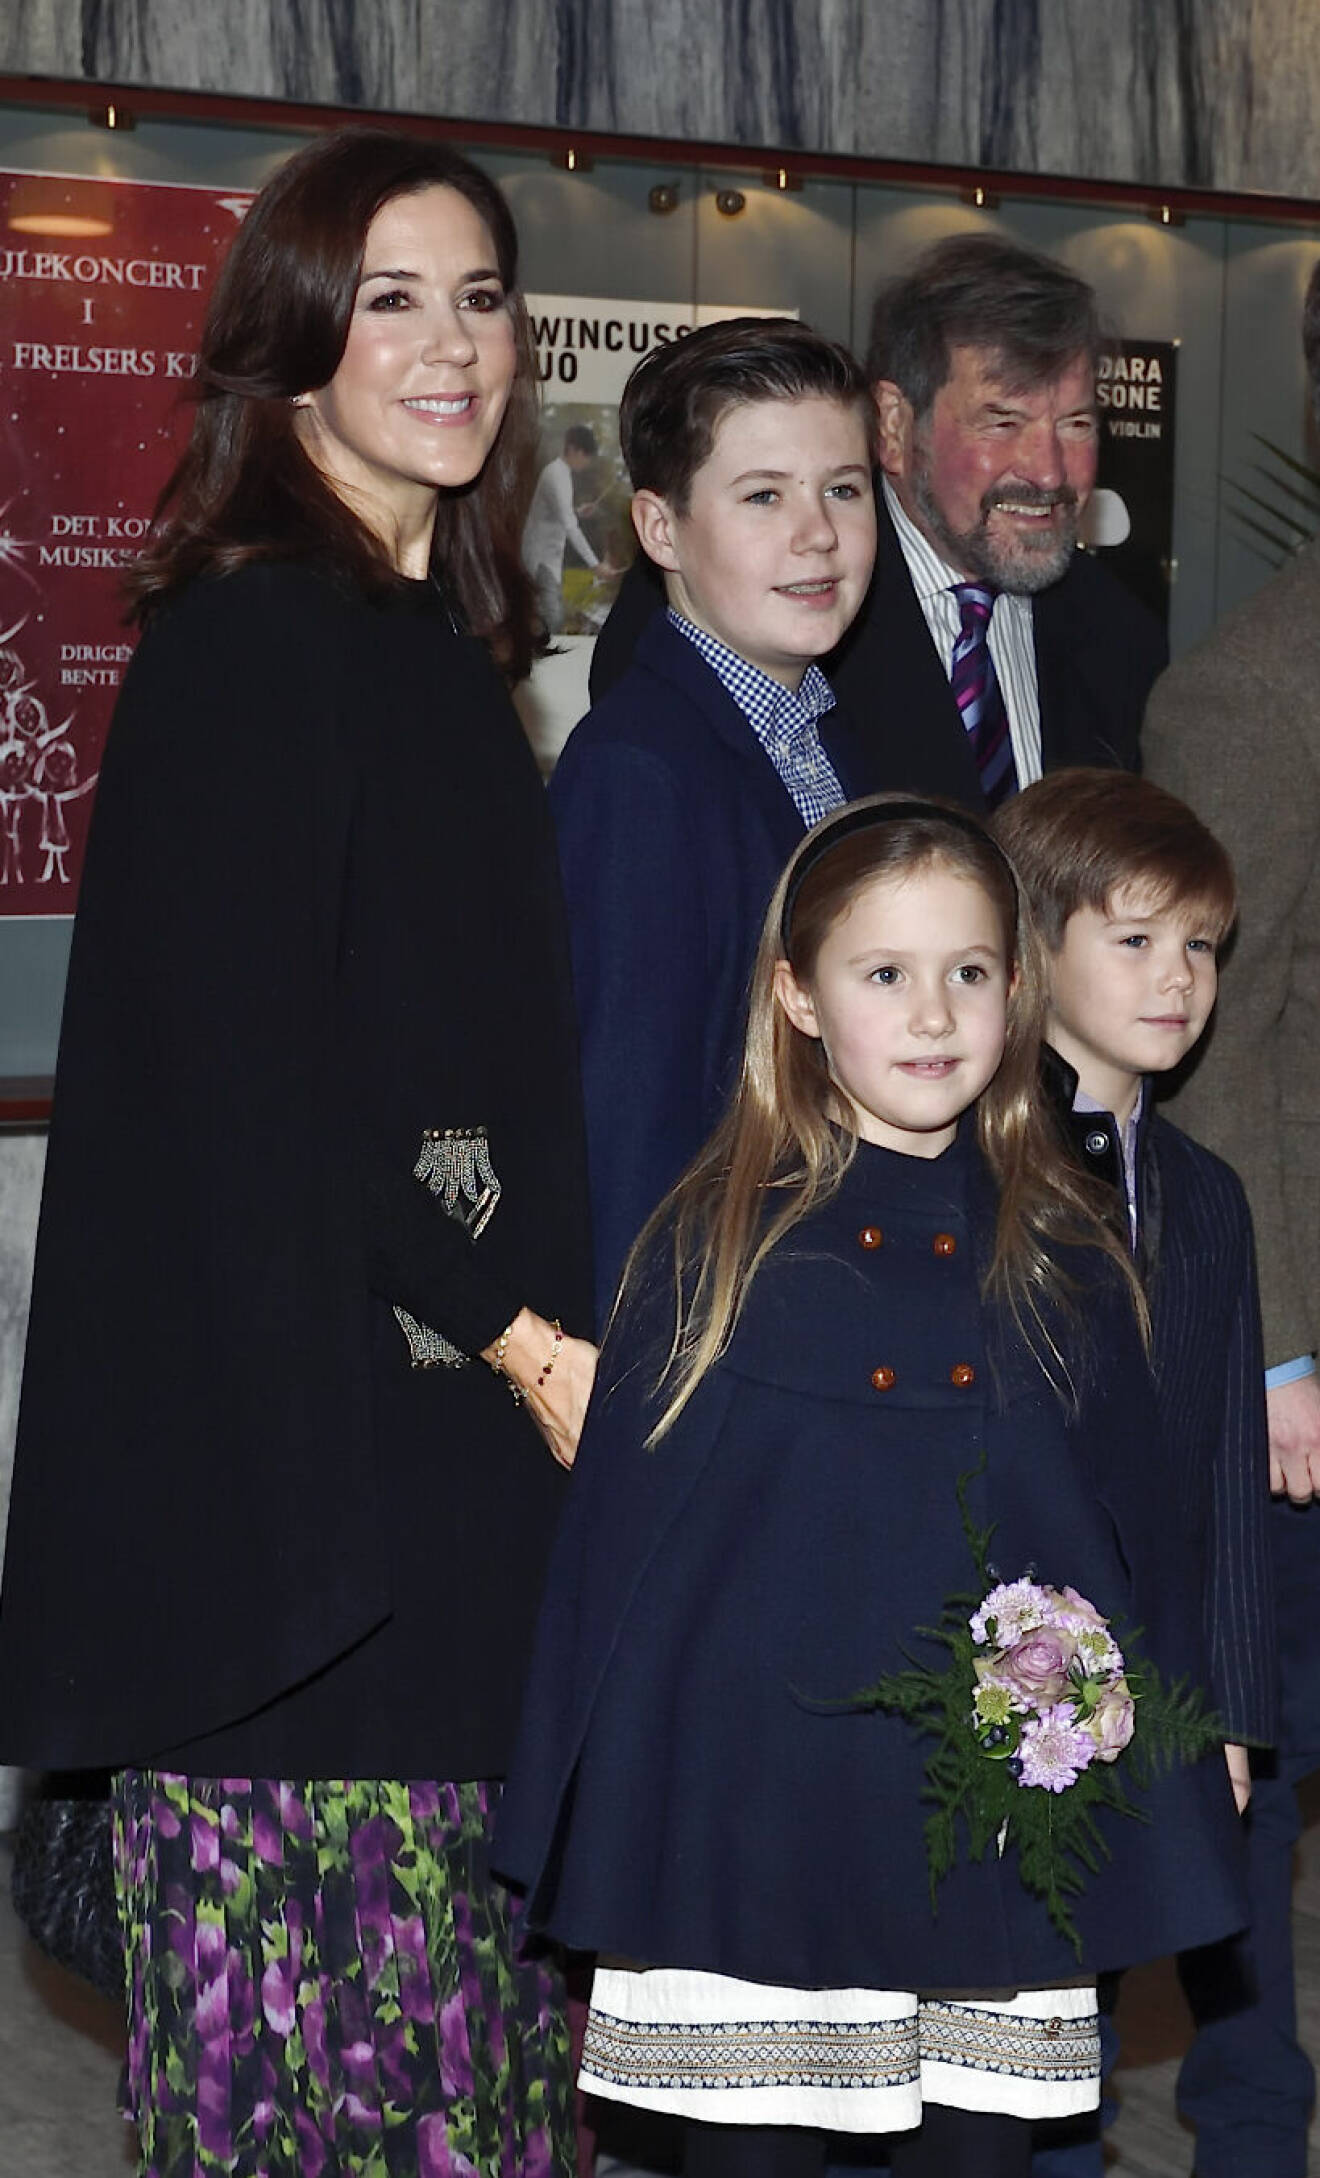 Drottning Mary med sin pappa John Donaldson vid hans besök i Köpenhamn 2018